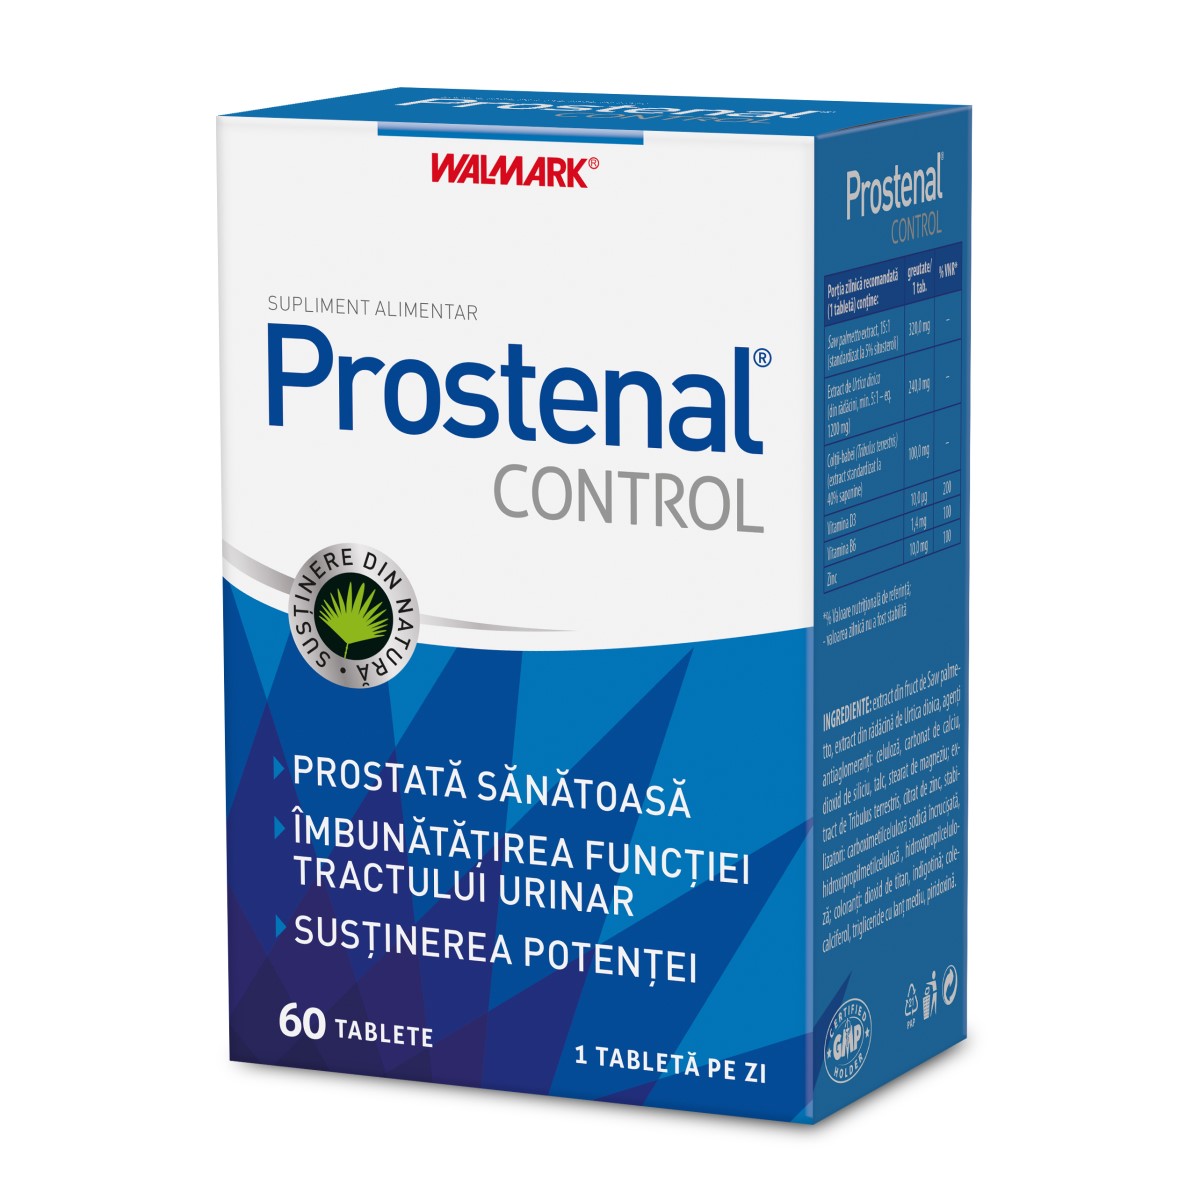 prostenal control dona supozitoare în rect pentru prostatită